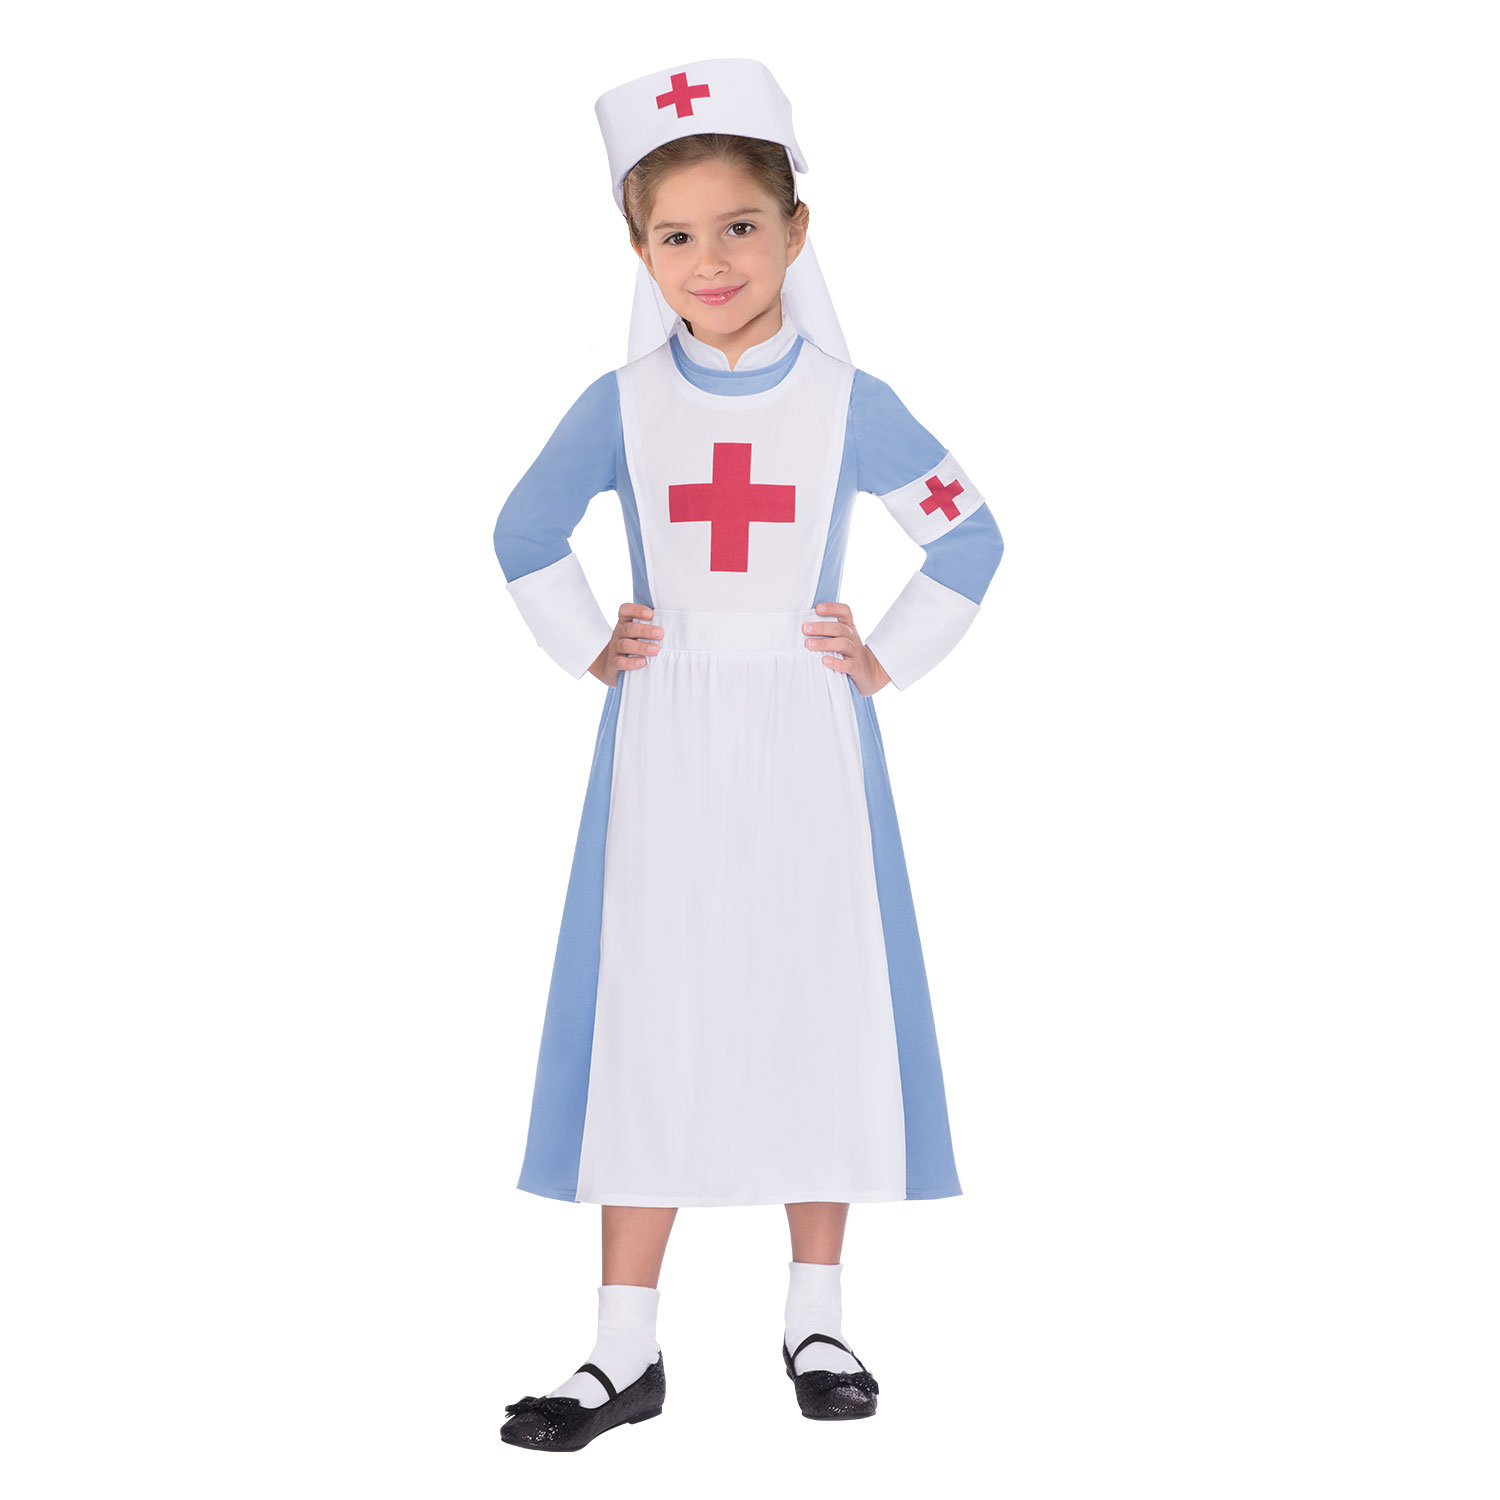 Vintage Nurse Costume - Age 10-12 Years - 1 PC. 